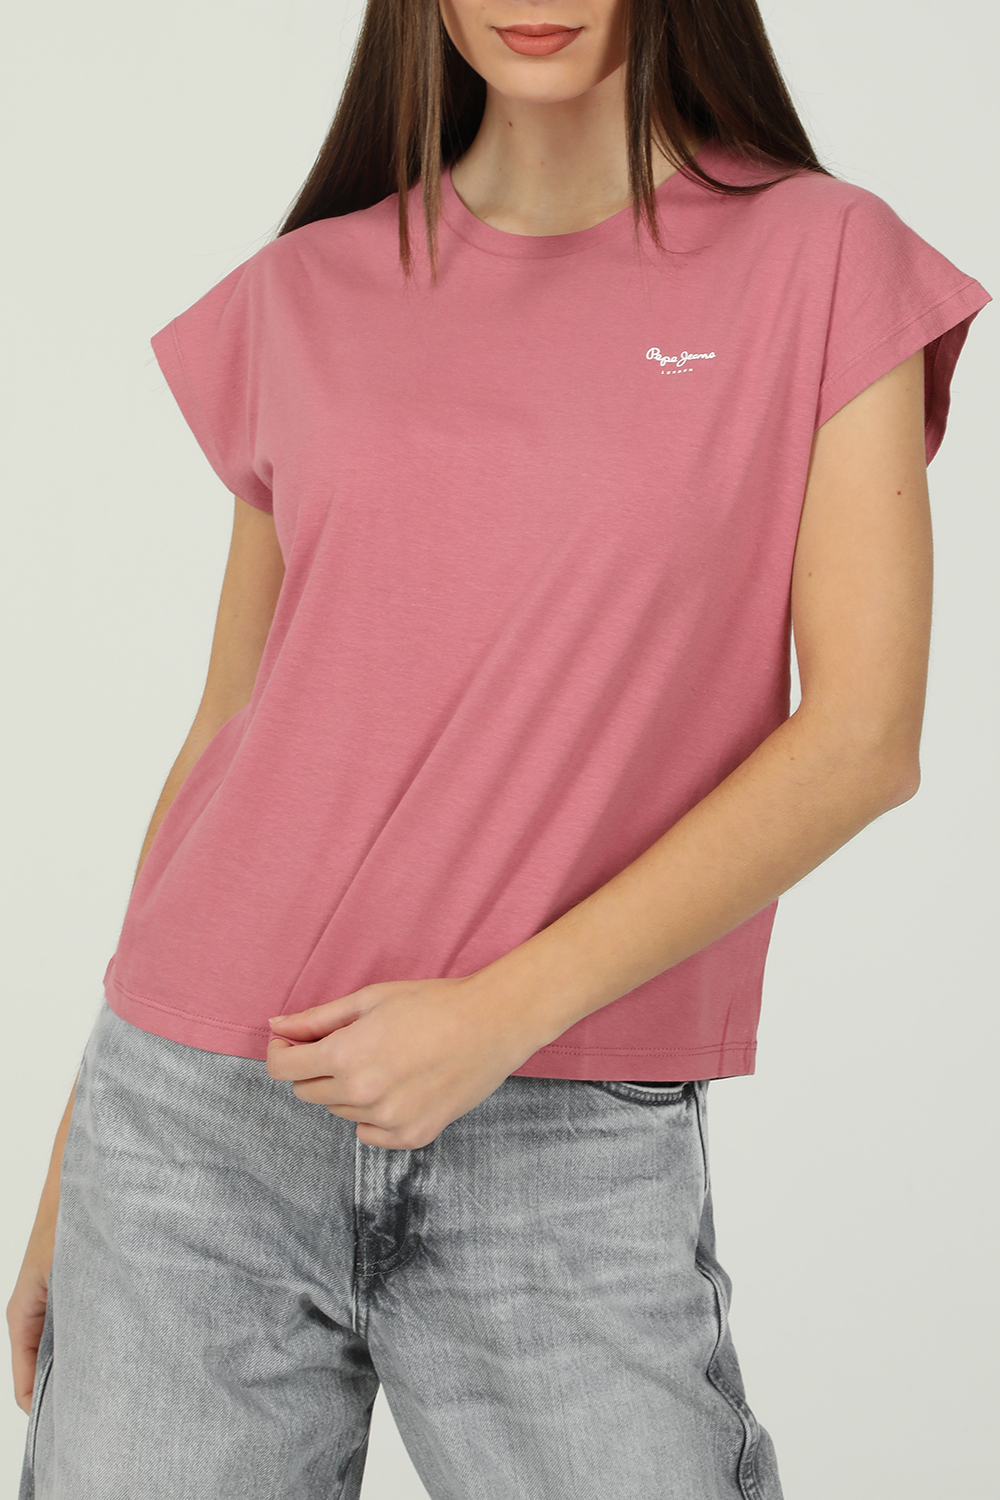 Γυναικεία/Ρούχα/Μπλούζες/Κοντομάνικες PEPE JEANS - Γυναικεία κοντομάνικη μπλούζα PEPE JEANS BLOOM ροζ